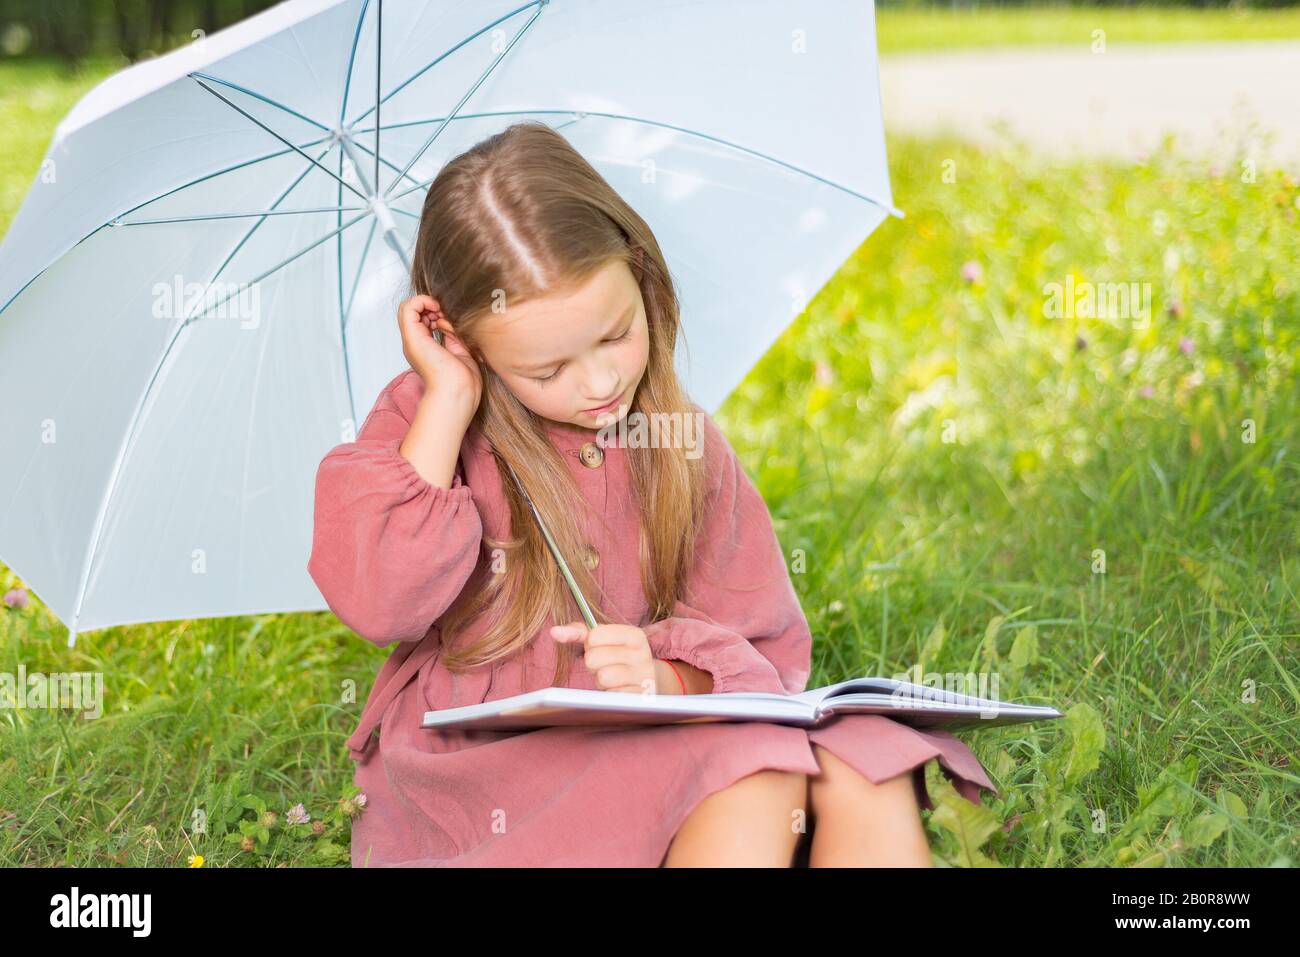 Kind liest ein Buch, kleines Mädchen unter einem Regenschirm sitzt an einem sonnigen Tag auf grünem Gras Stockfoto